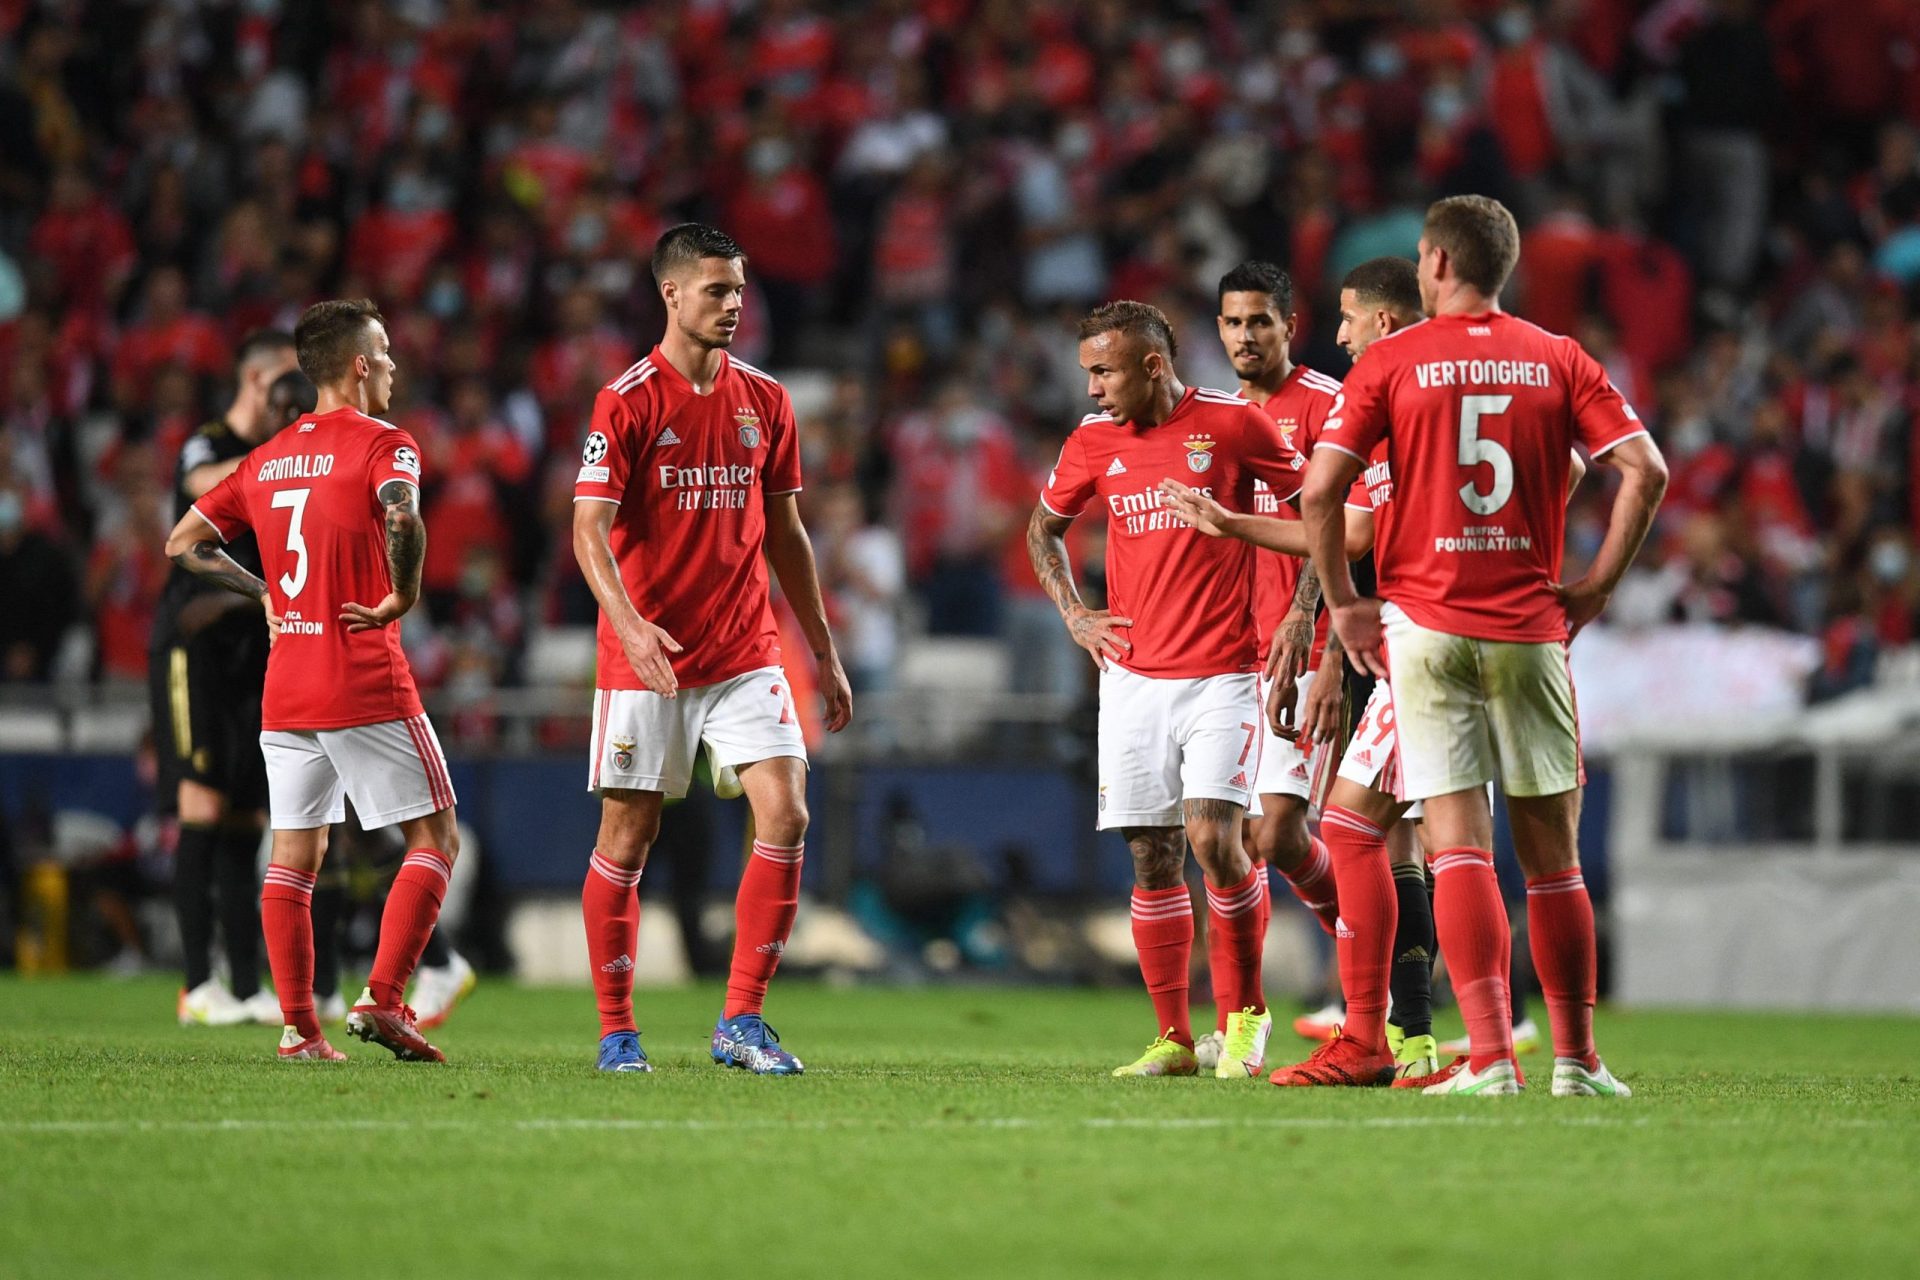 Benfica empata frente ao Vitória de Guimarães depois de ter estado a ganhar por 2-0